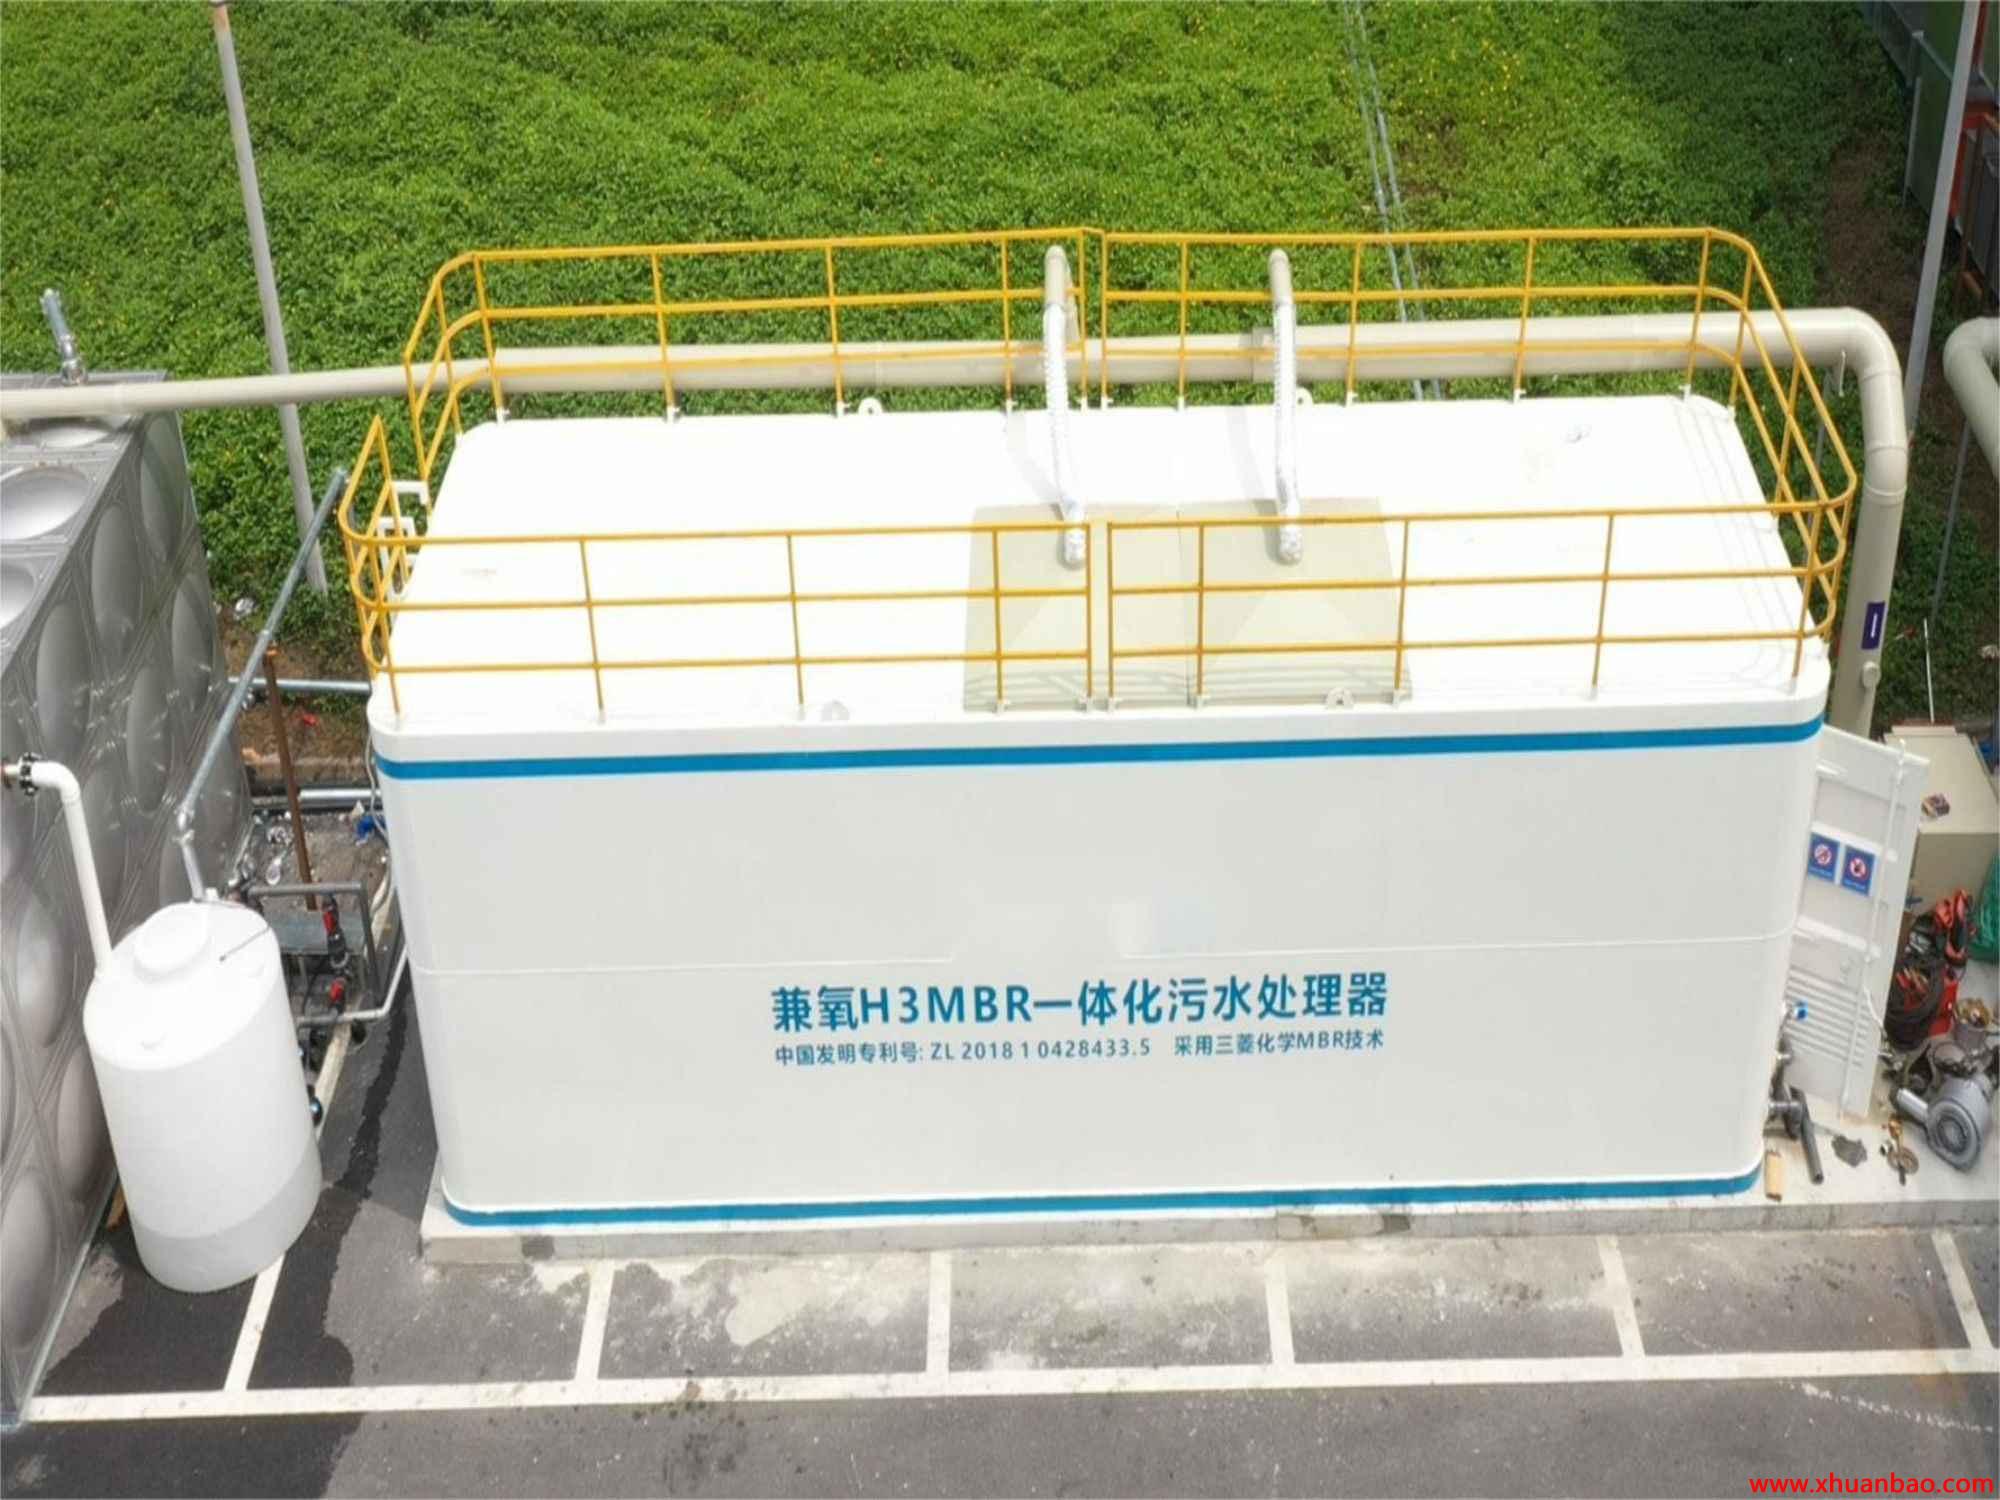 广西桂林方舱医院污水处理mbr一体化设备 兼氧运行达标排放